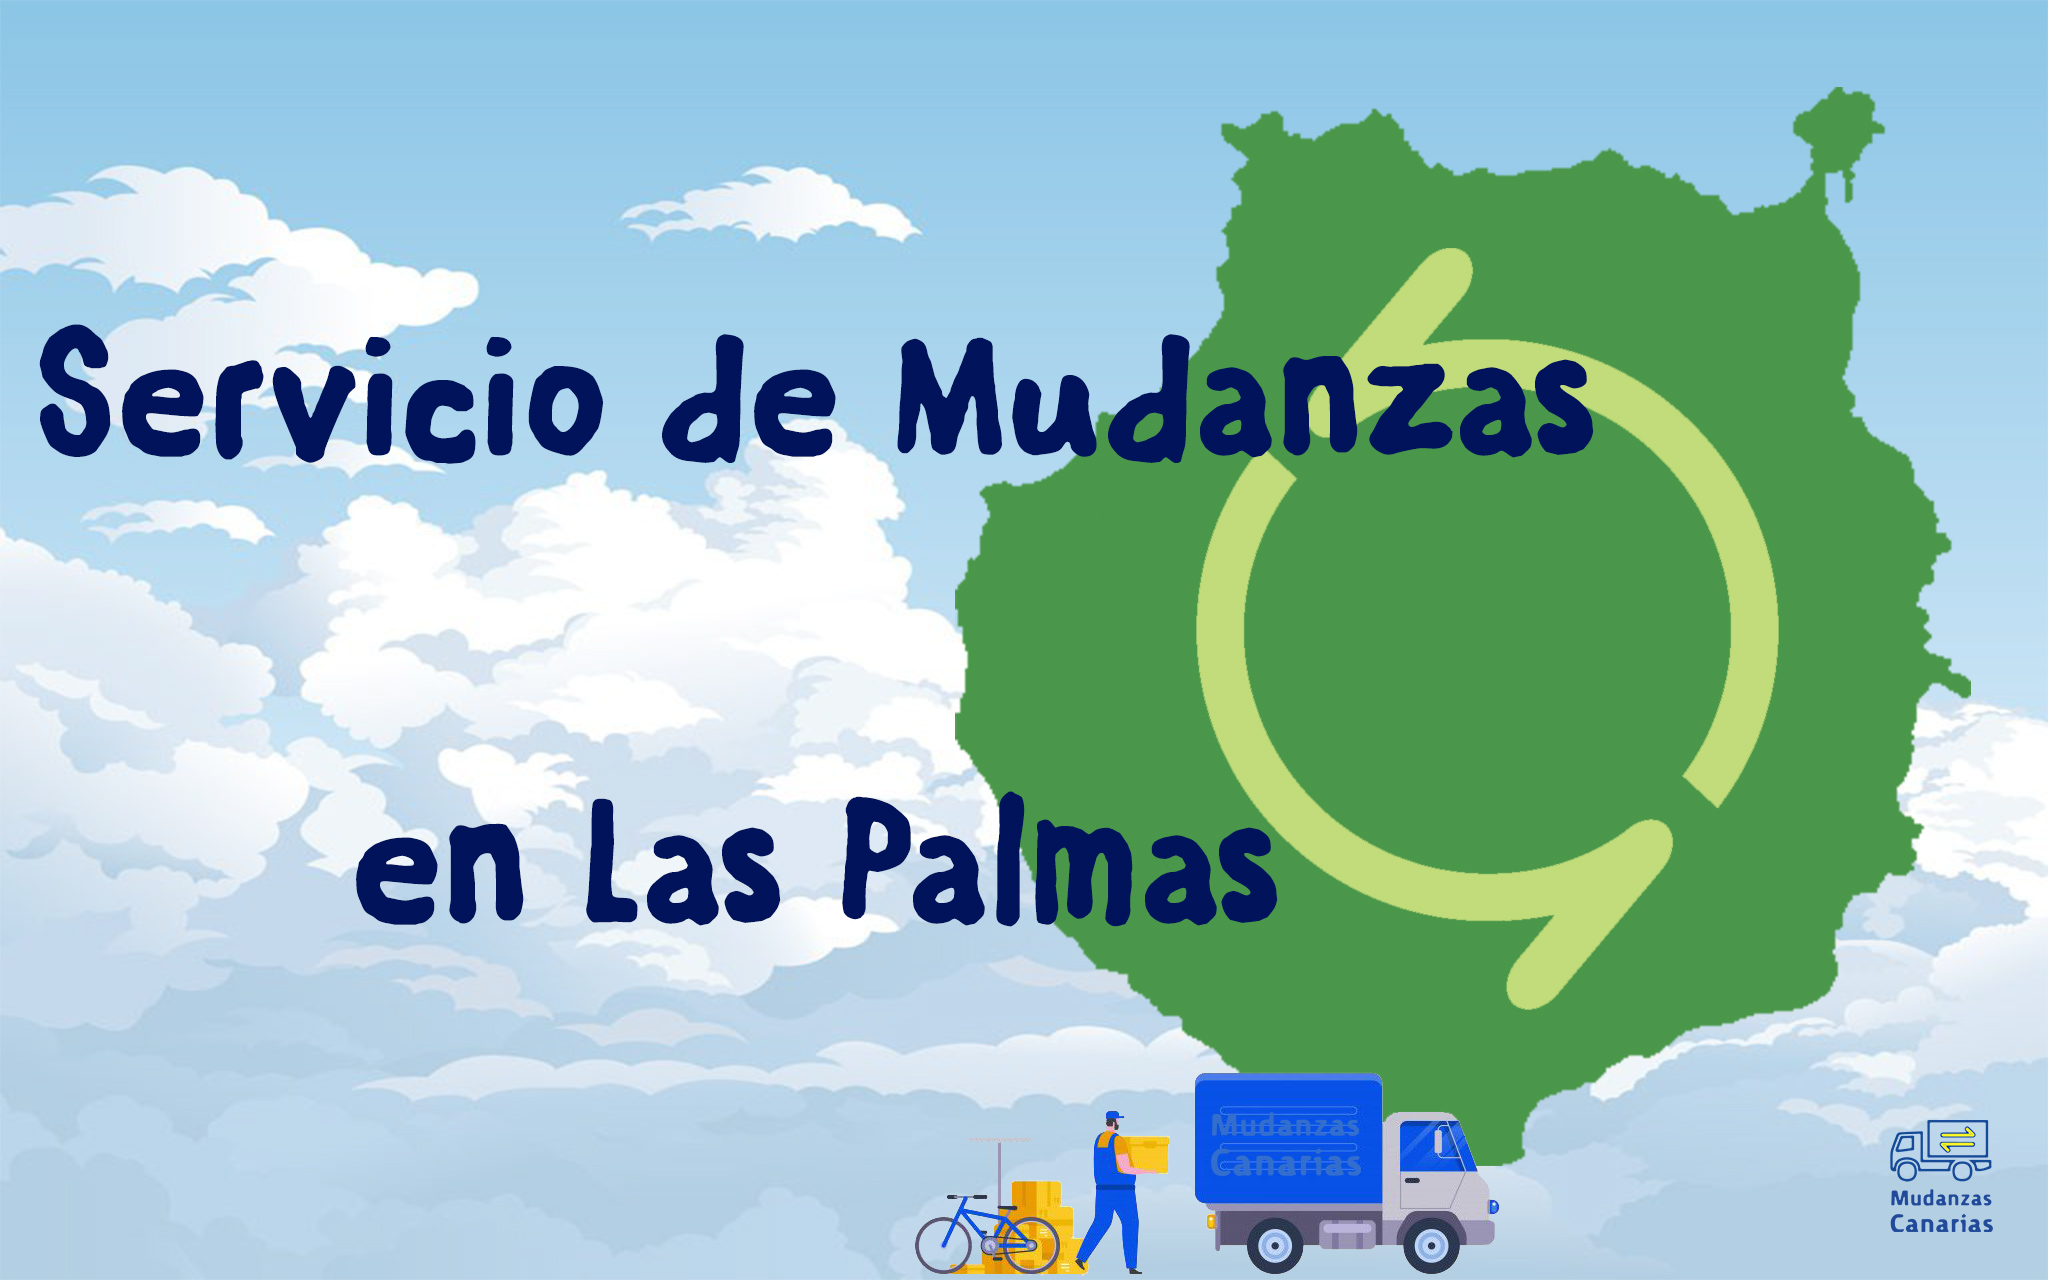 Mudanzas en Las Palmas